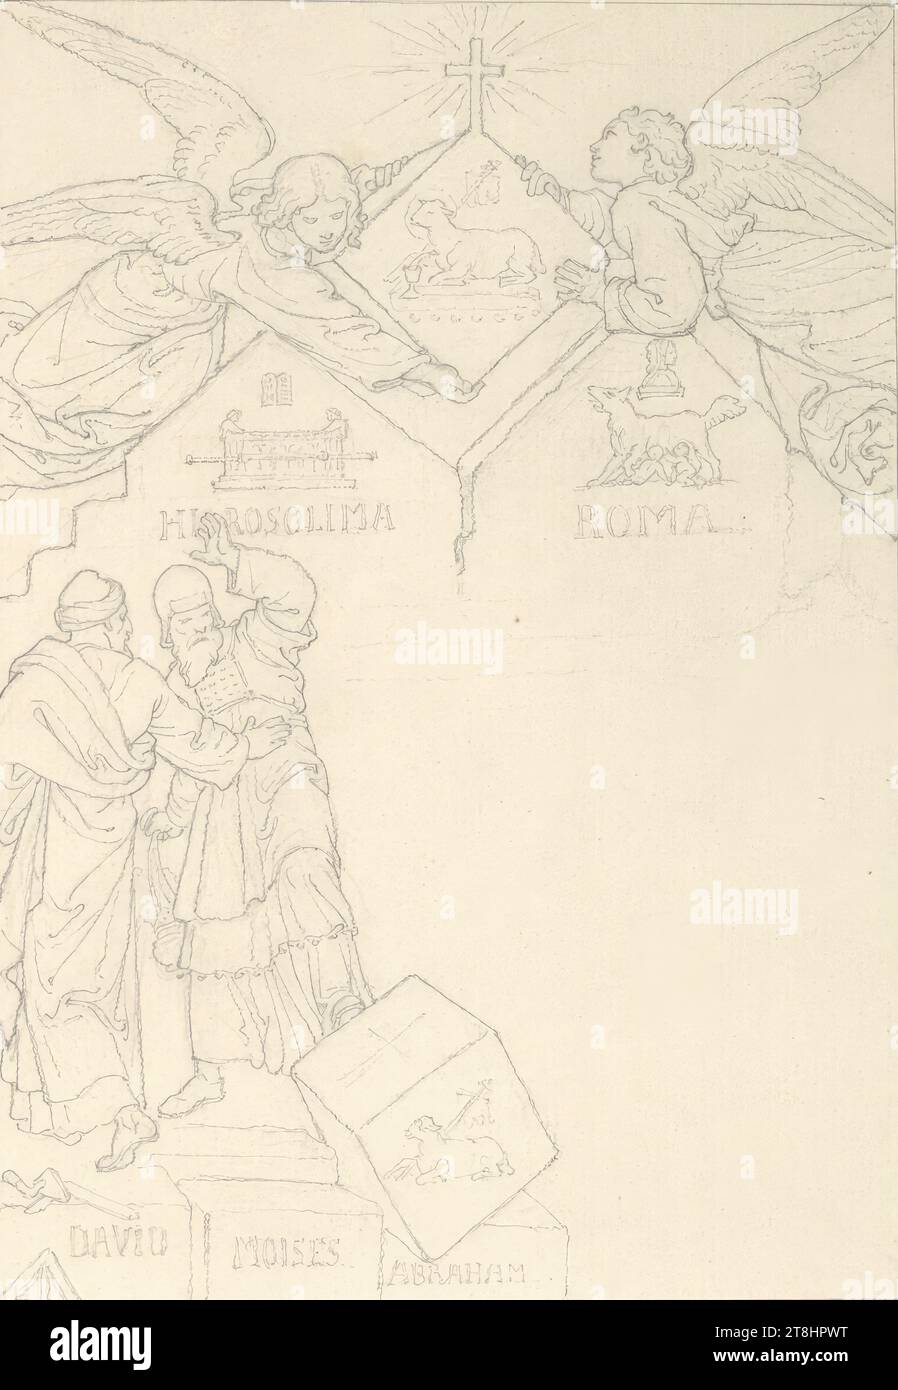 22) Salmo 117: La pietra di inciampare, un sommo sacerdote colpisce la pietra con il piede su cui è raffigurato l'Agnello di Dio, sopra di essa ci sono due angeli, serie di 30 parti: progetti per la pubblicazione "il Salterio", Josef von Führich, Kratzau 1800 - 1876 Vienna, disegno, matita, secondo Cahier: Passepartout: 20 x 14 cm, l.o. 'HIROSOLIMA'; r.o. 'ROMA'; l.u. 'DAVID MOISES ABRAHAM'; M.u. '22, Austria Foto Stock